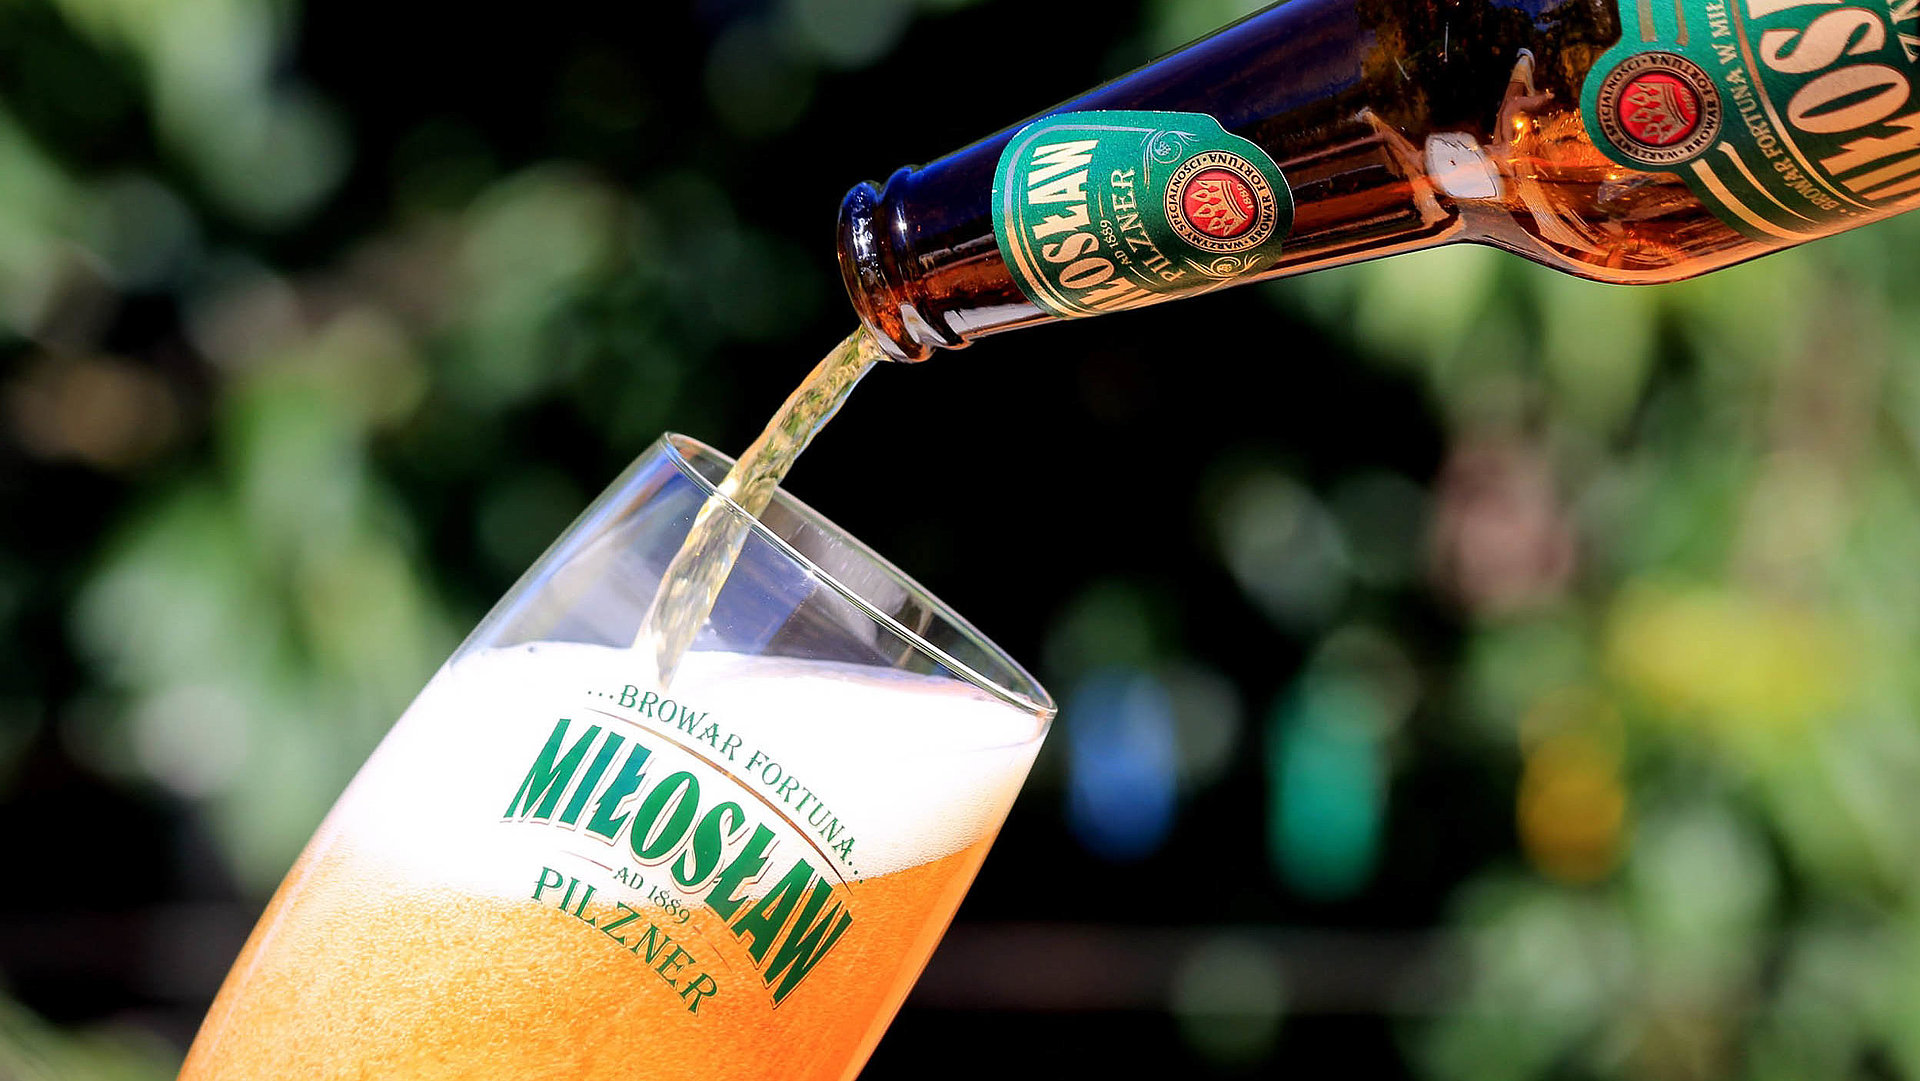 Biergarten in Oberbayern - Bier wird soeben bis zum Rand aufgefüllt